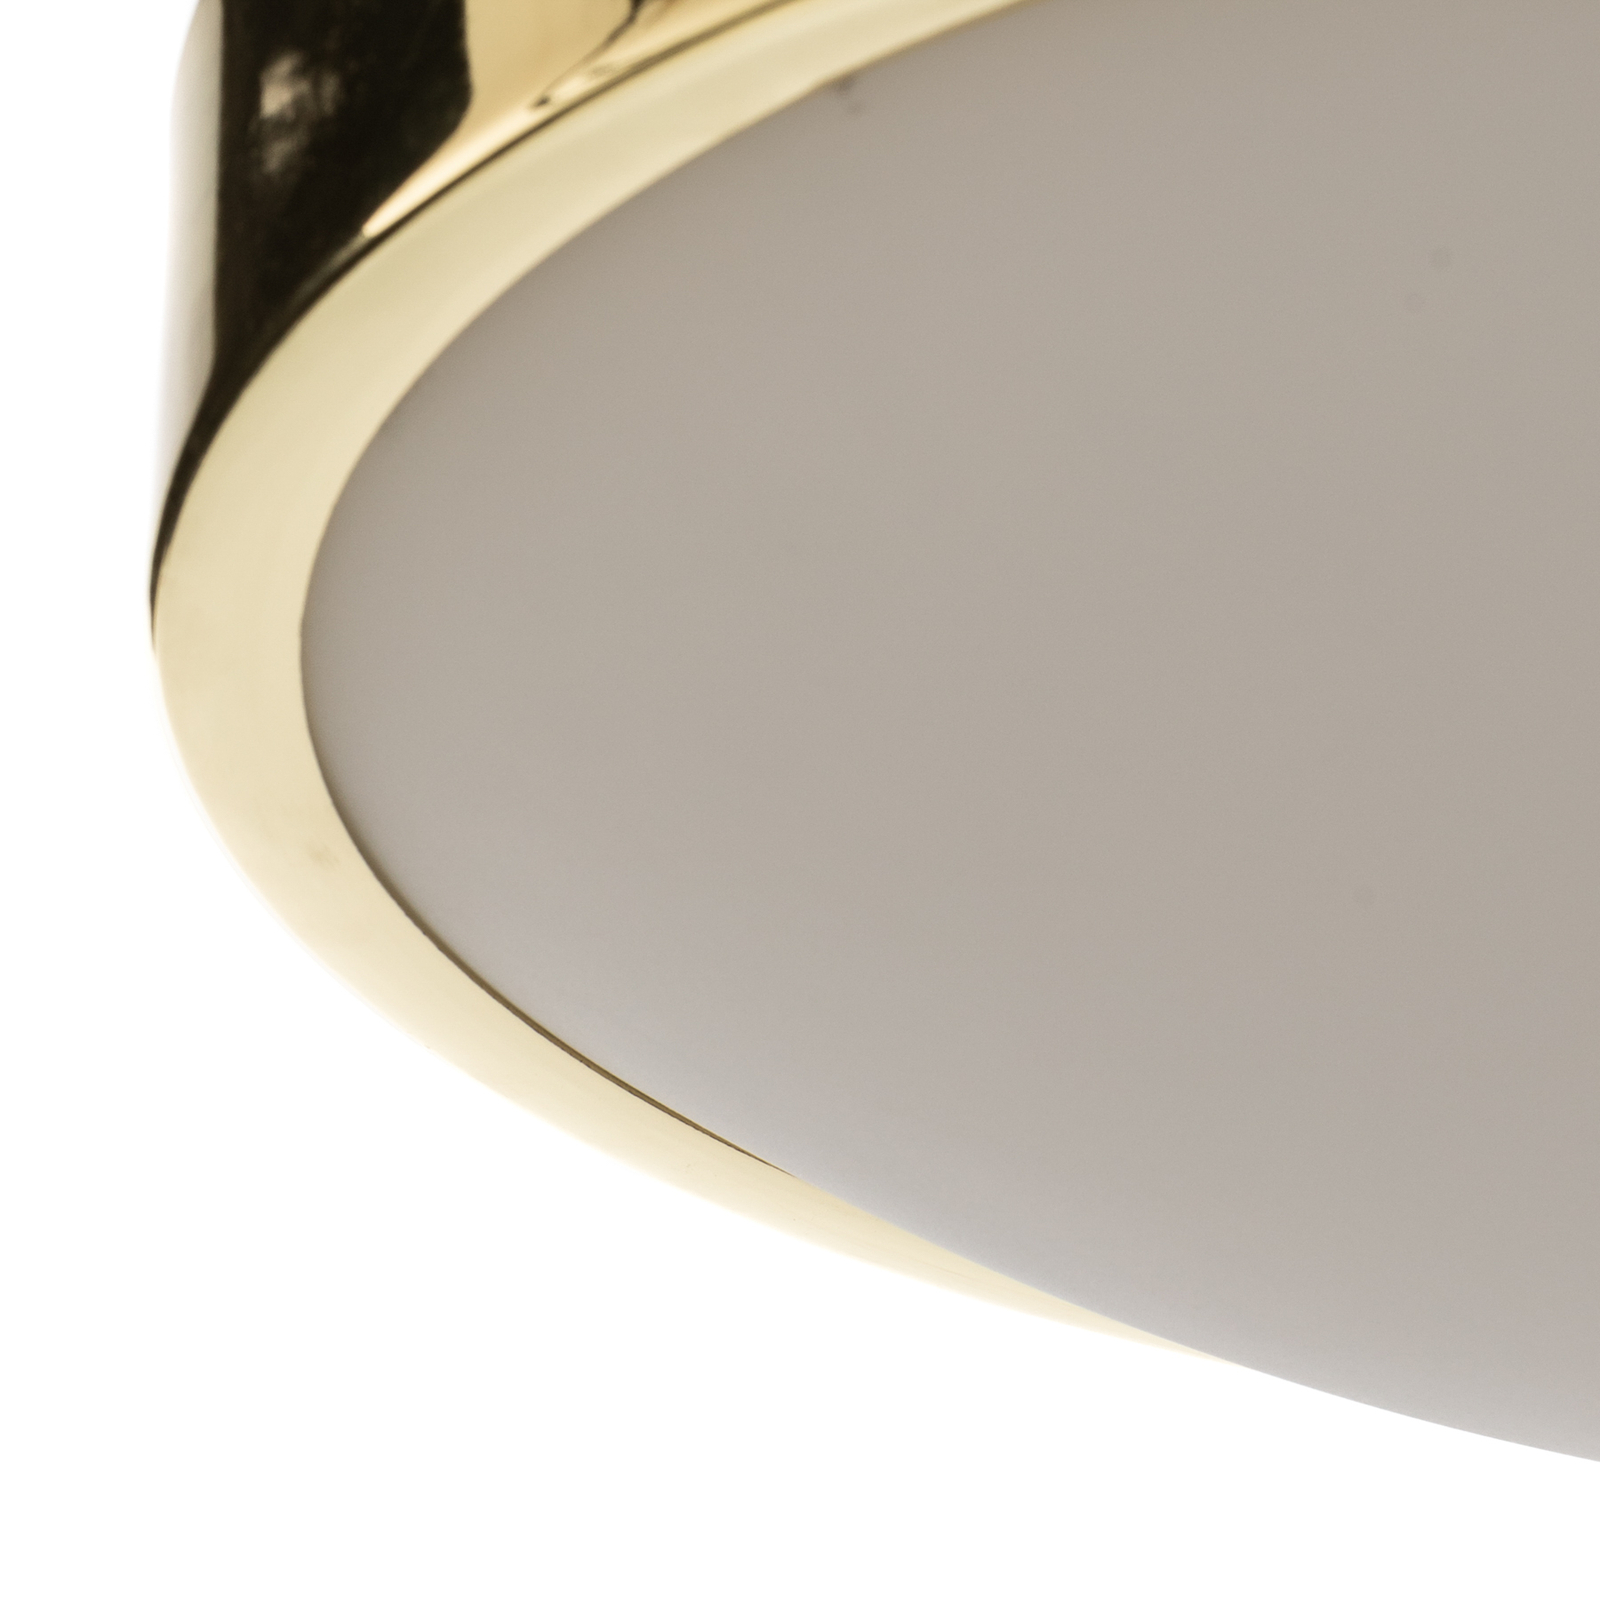 Jaris-kattovalo lasia, pyöreä, Ø 36 cm, kulta